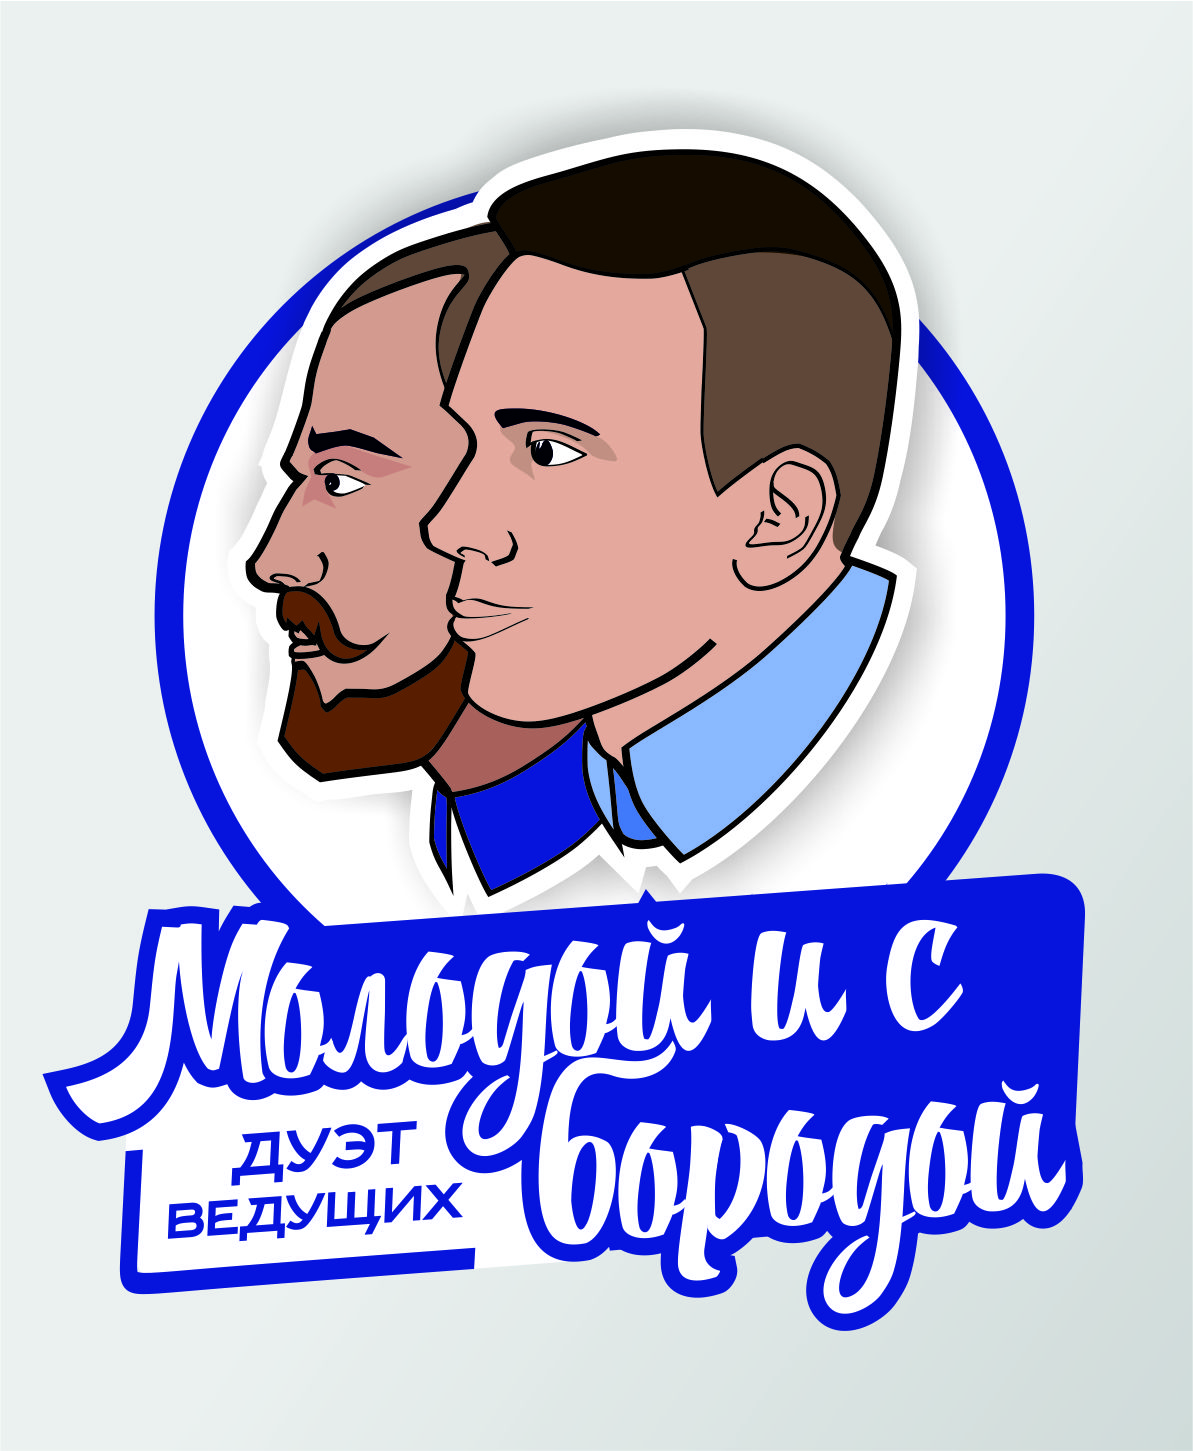 Дуэт ведущих "Molodoy & с Бородой"